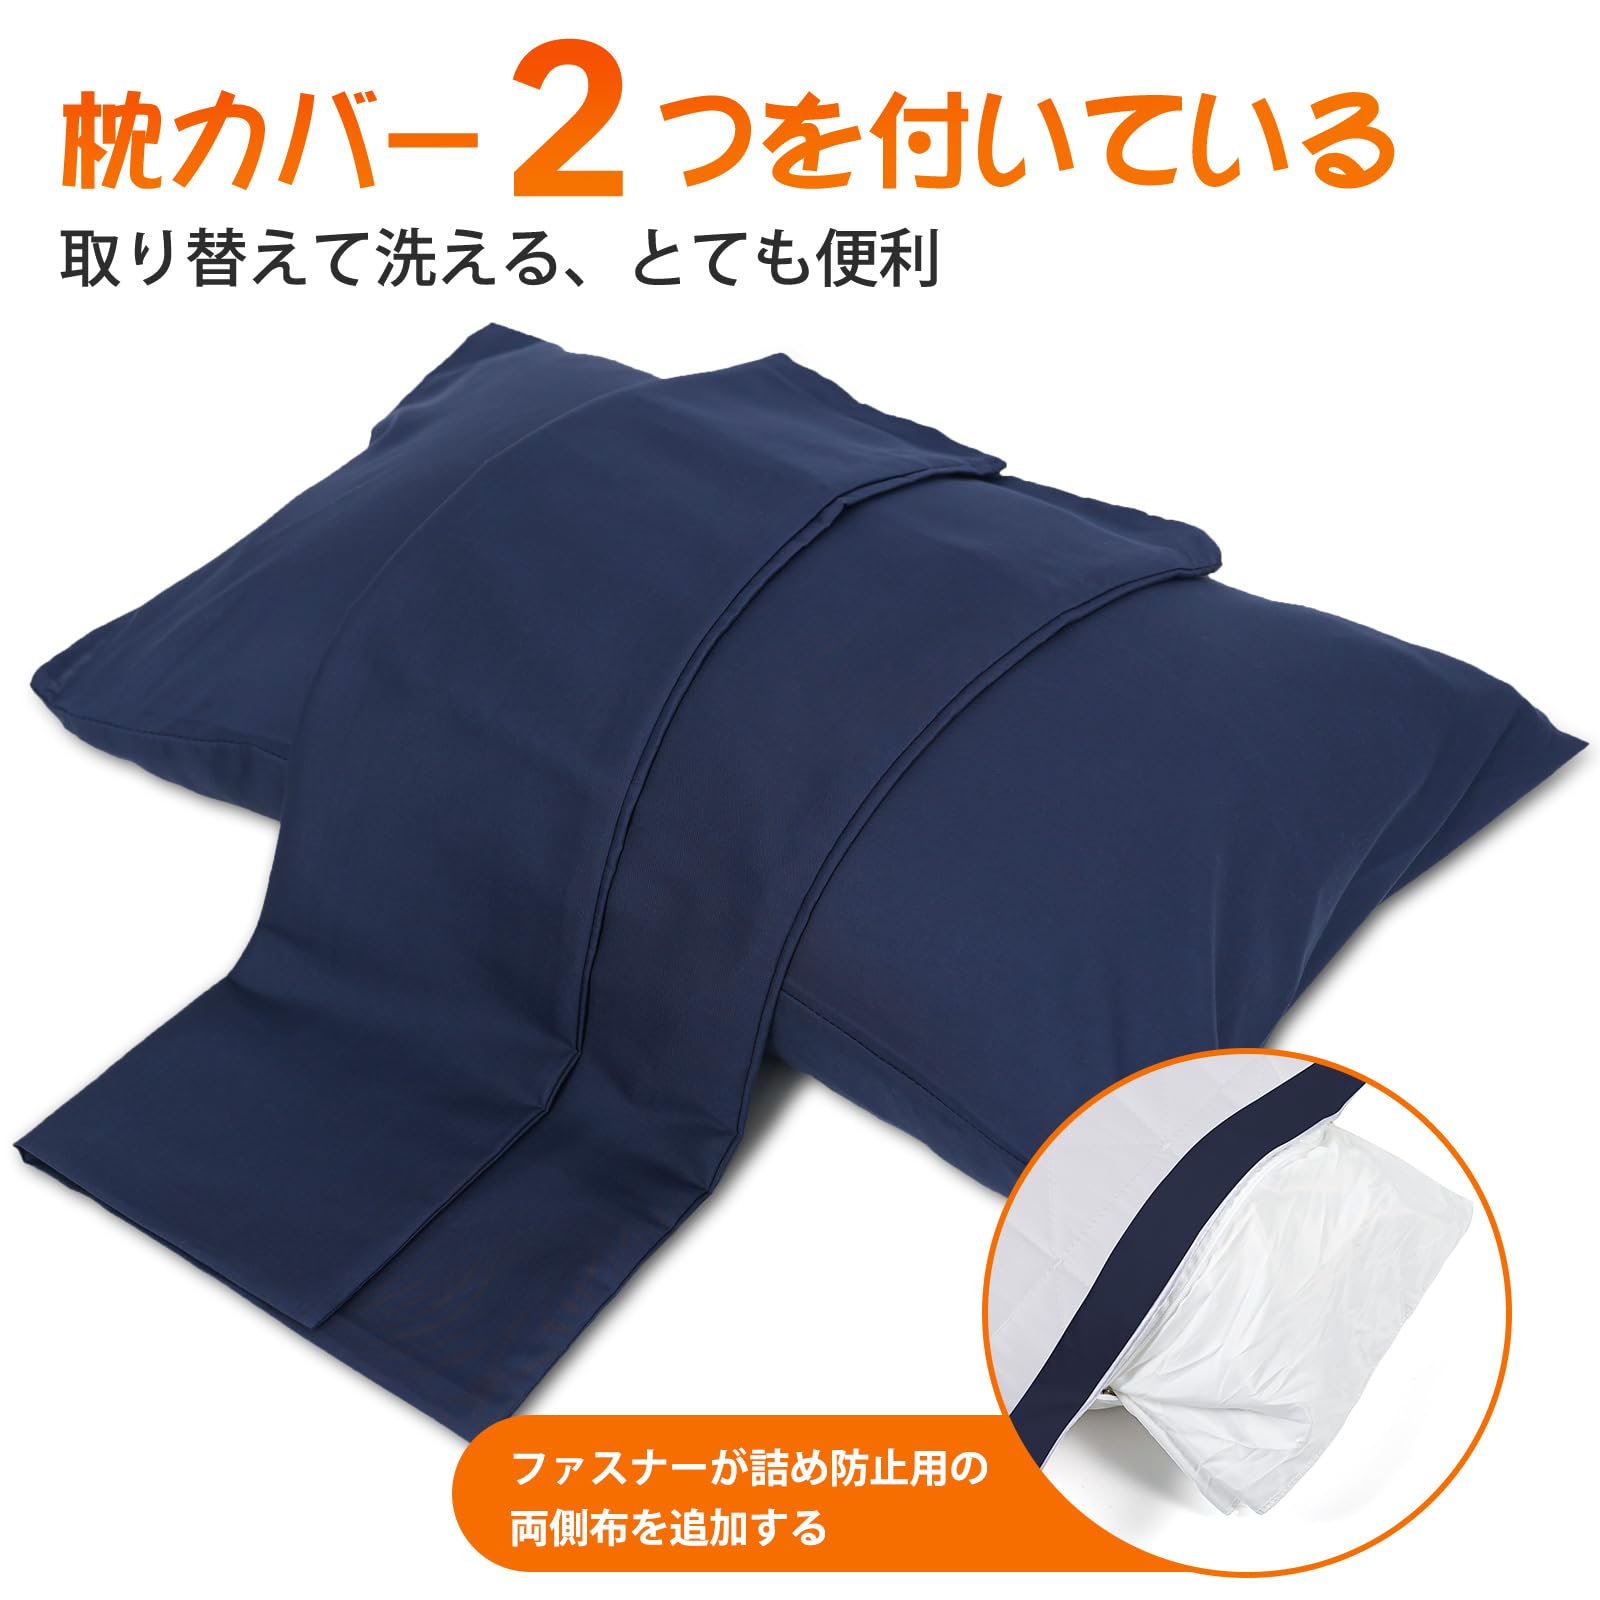 Anywin 枕 カバー2枚付き まくら ホテル仕様 高反発枕 安眠 快眠 丸洗い可能 立体構造 3